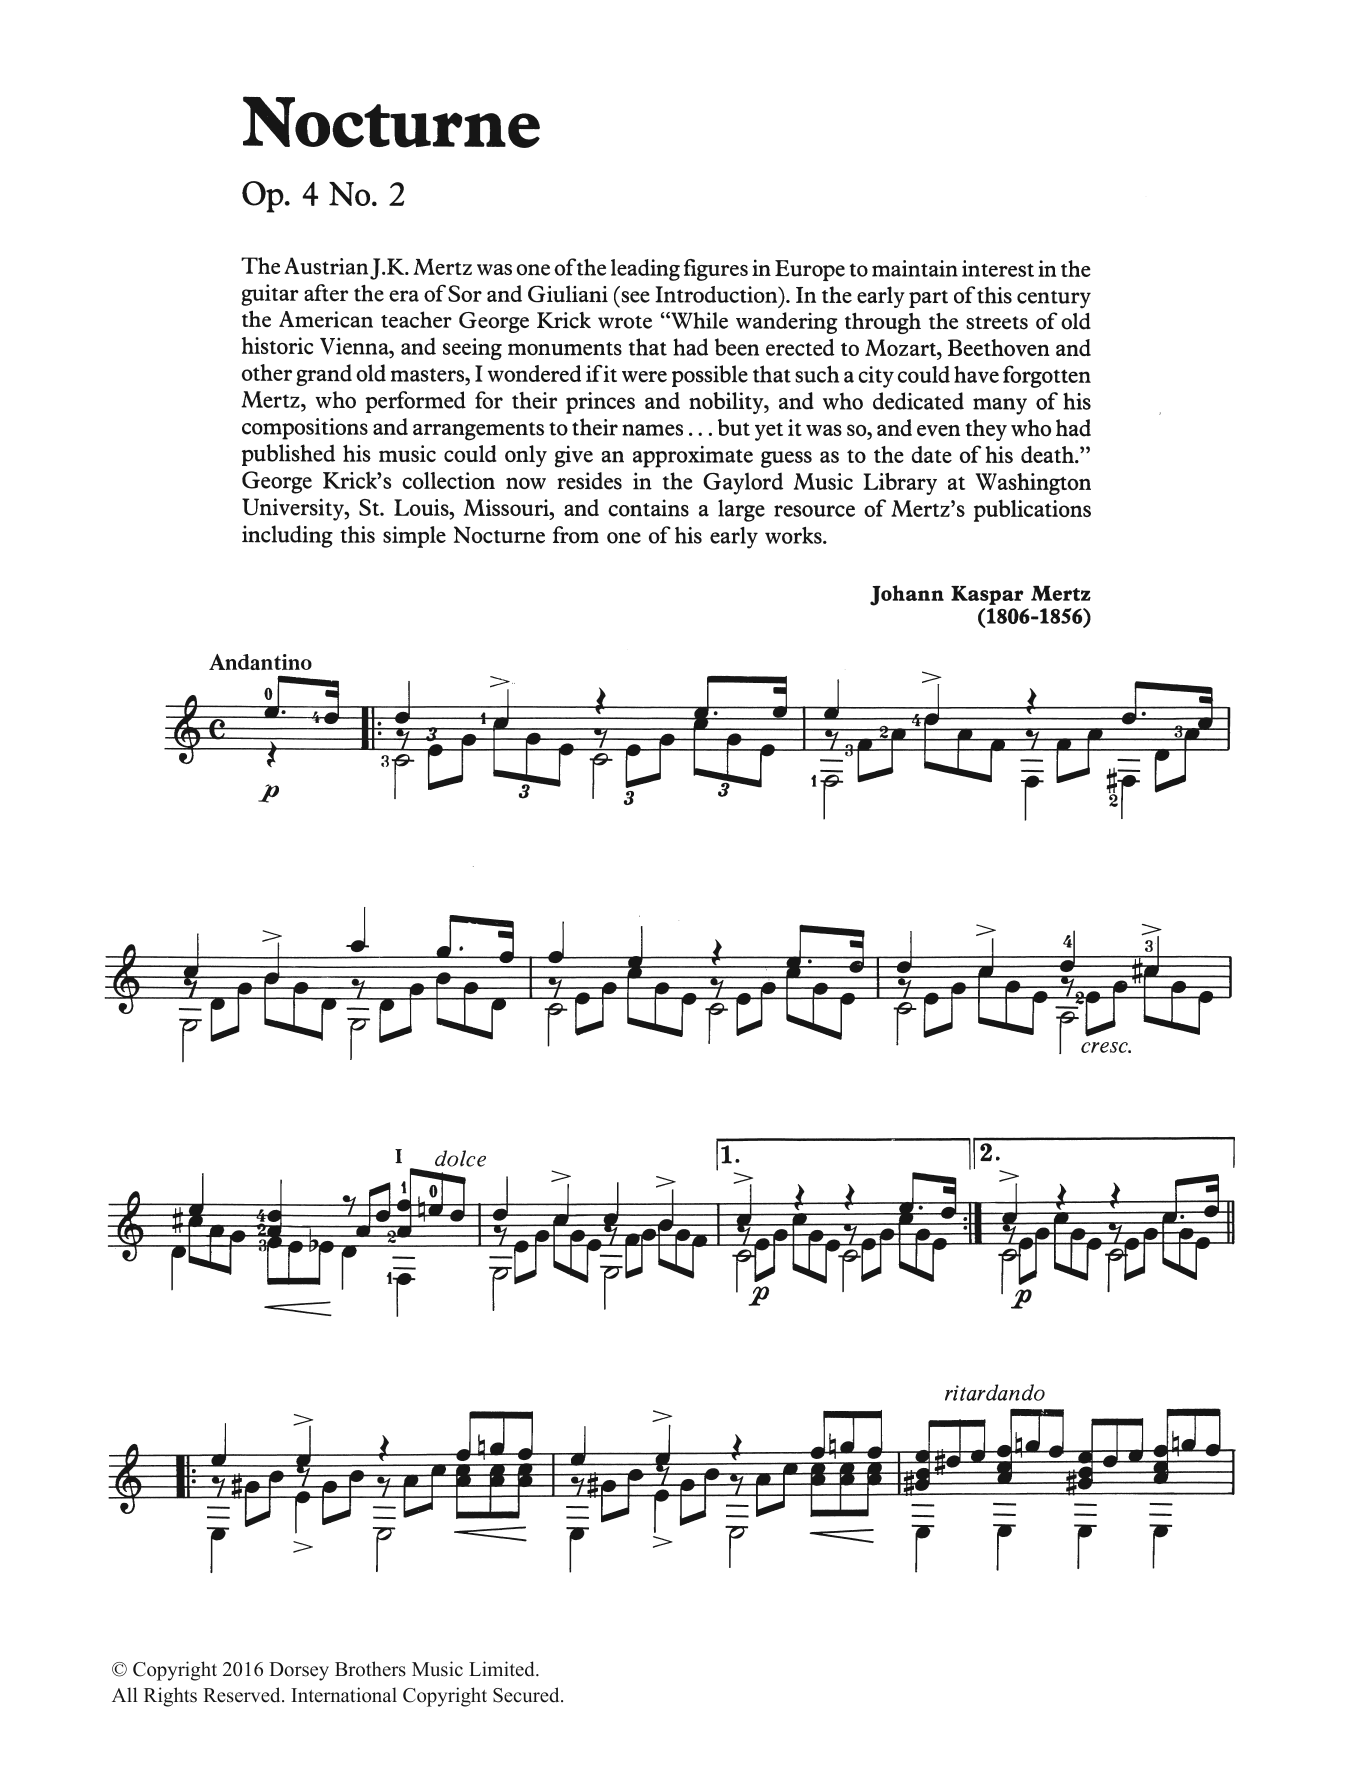 Johann Kaspar Mertz Nocturne Sheet Music Notes & Chords for Guitar Tab - Download or Print PDF